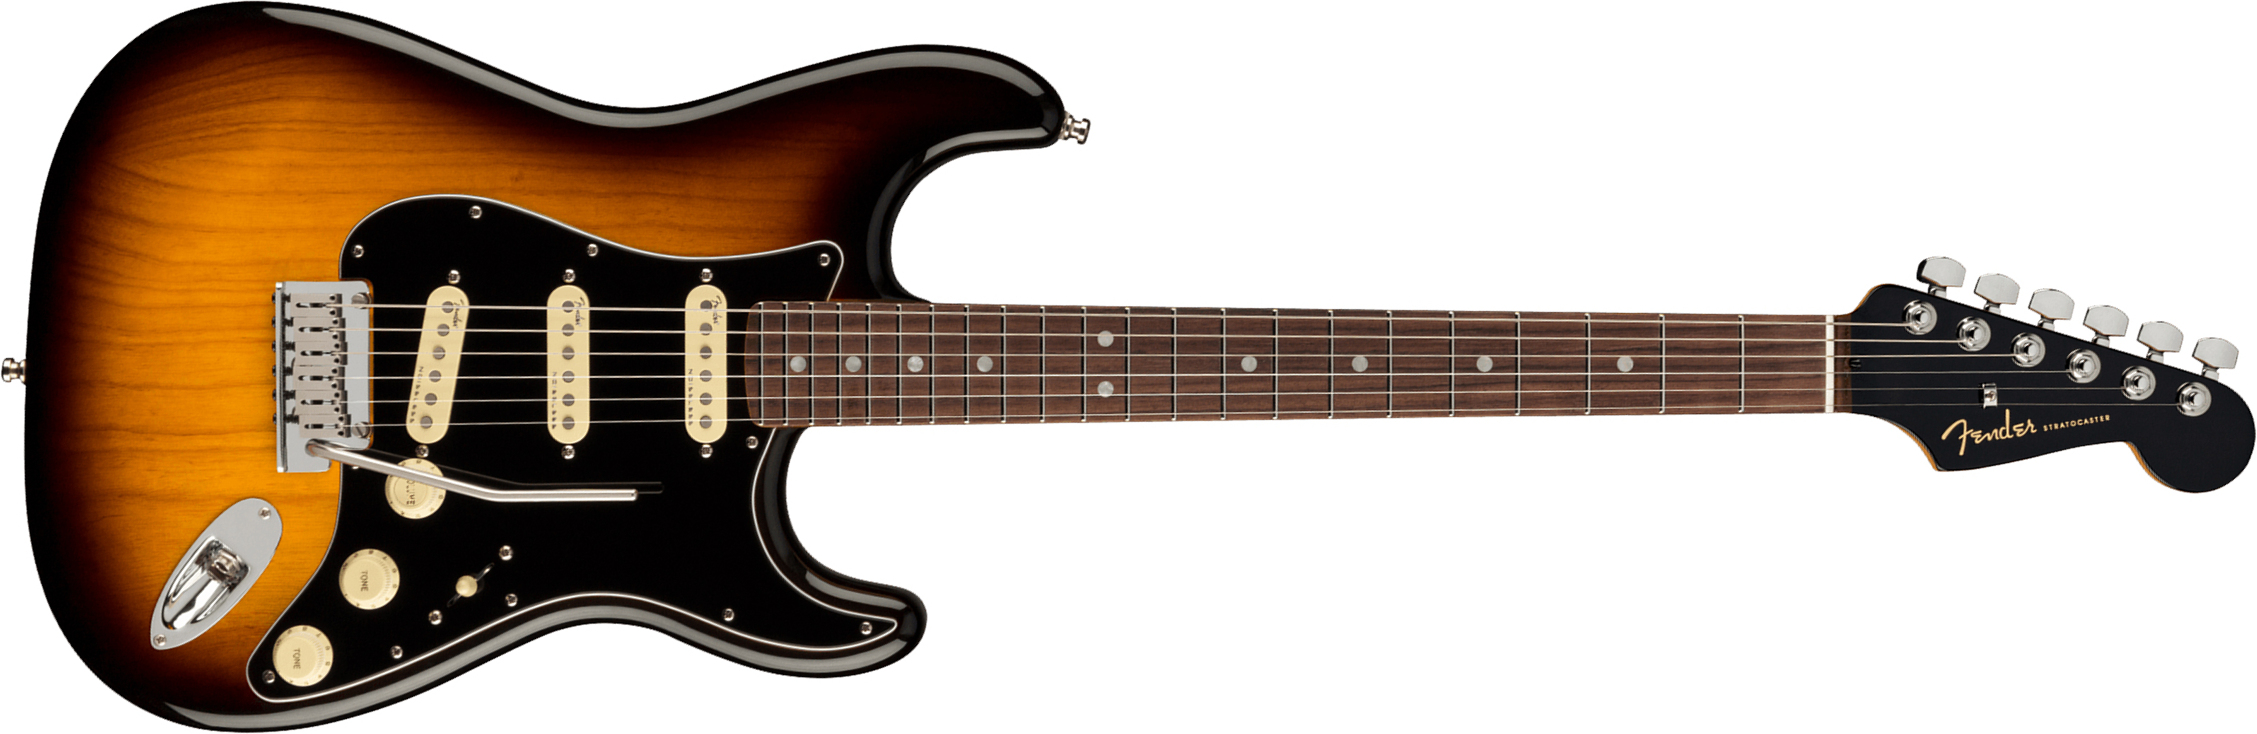 Fender Strat American Ultra Luxe Usa Rw +etui - 2-color Sunburst - Guitare Électrique Forme Str - Main picture